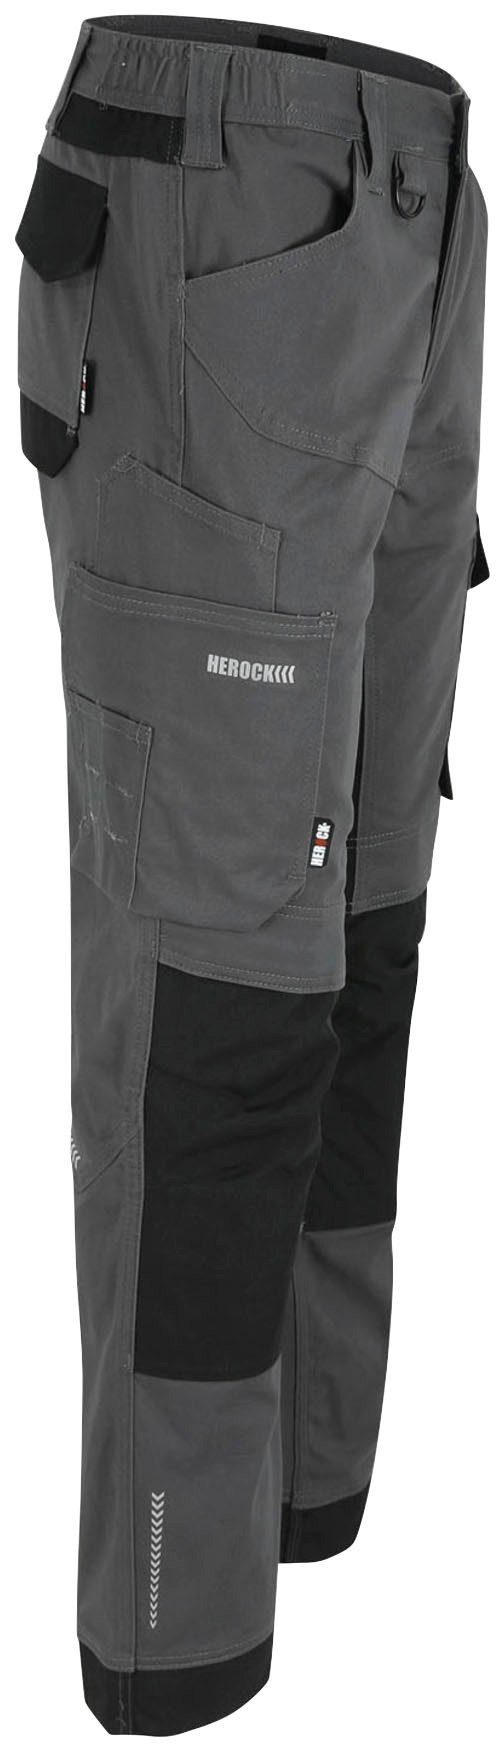 Arbeitshose Stretch, weich und wasserabweisend, Herock bequem XENI Baumwolle, Multi-pocket, grau